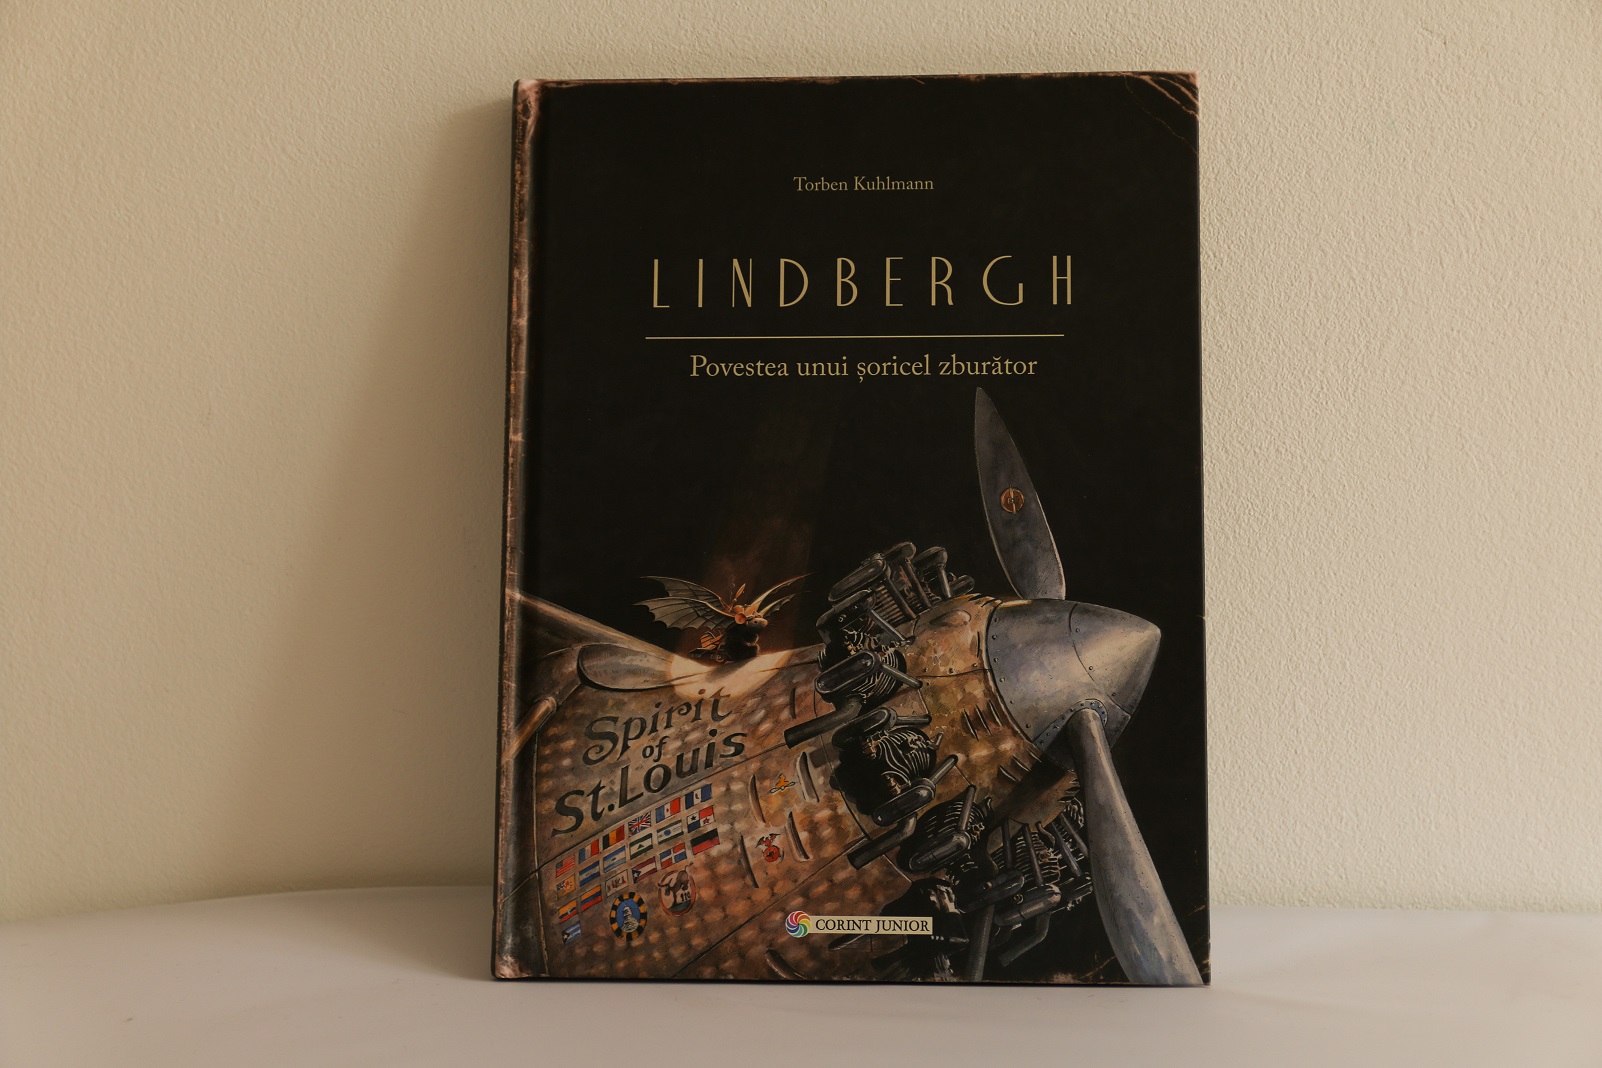 recenzie carte: Lindbergh - povestea unui soricel zburator